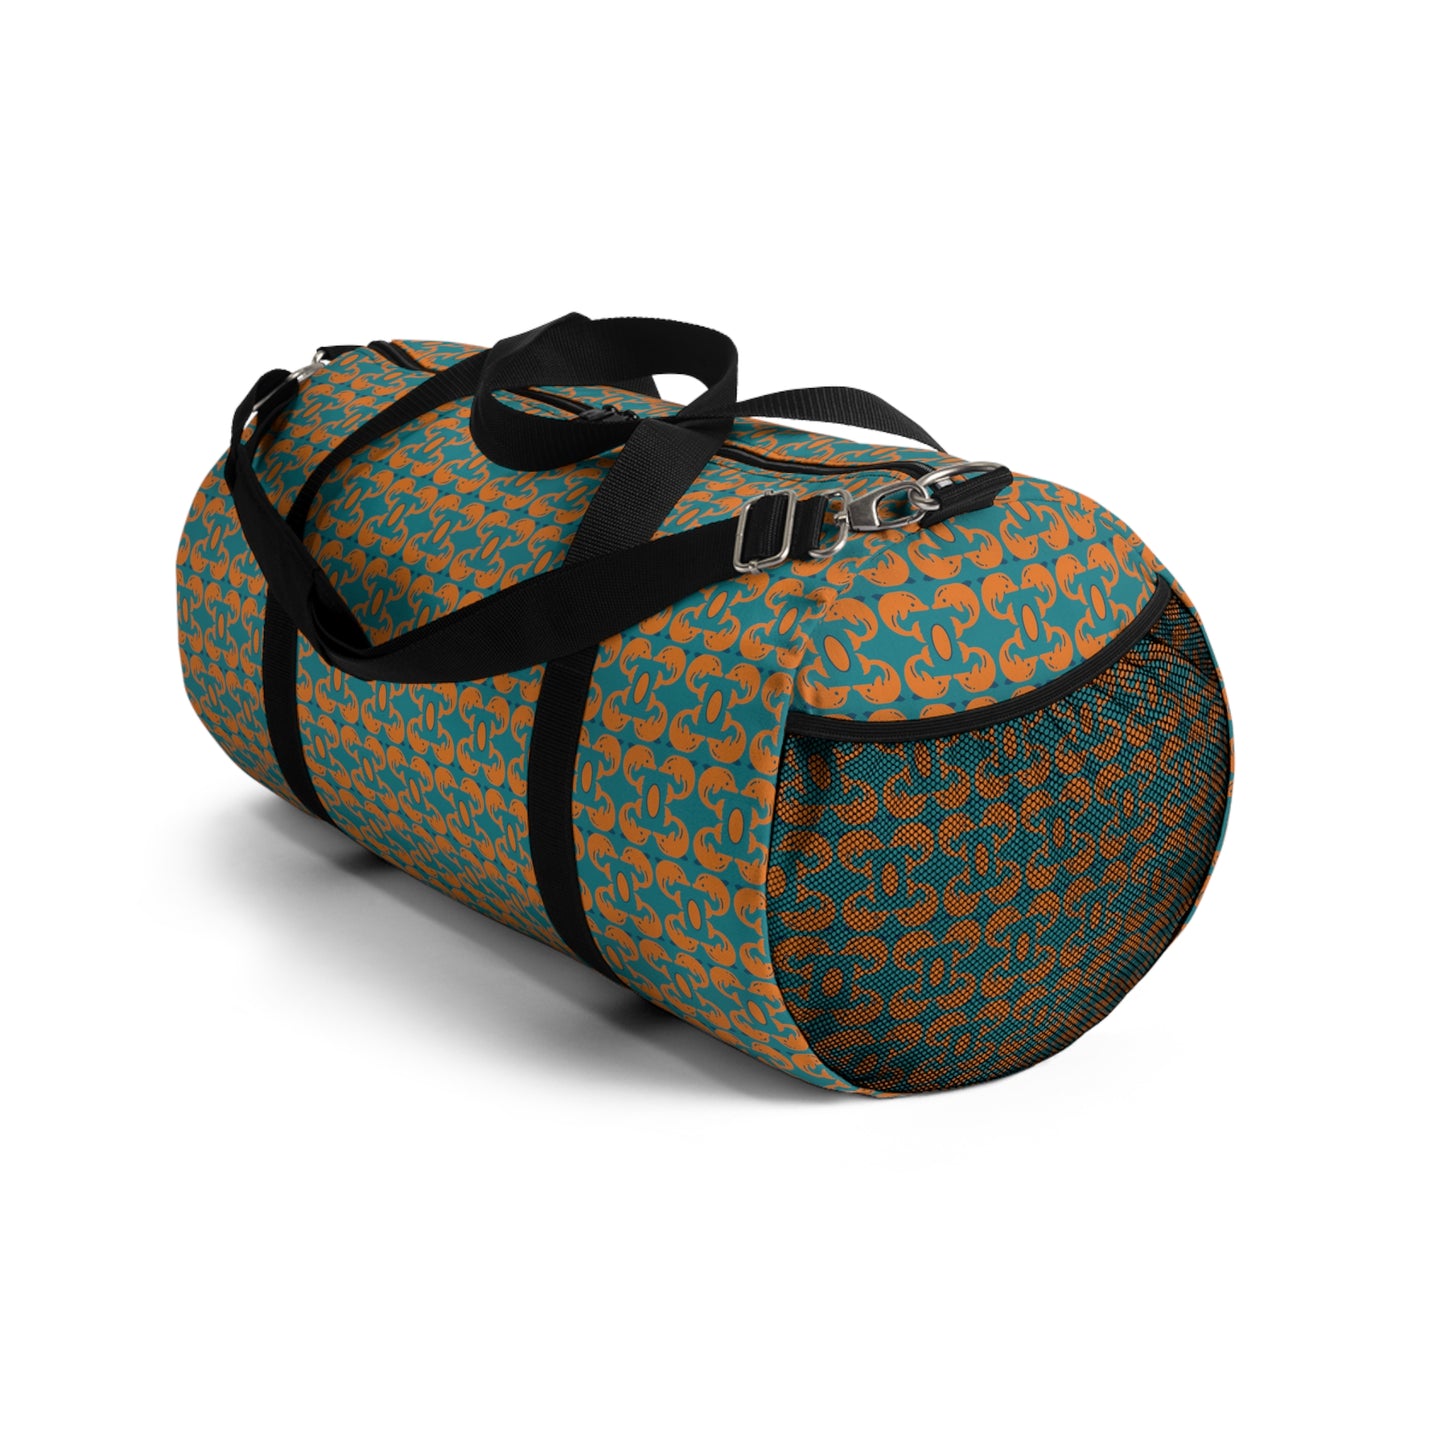 Playful Dolphins Orange F58220 - Duffel Bag